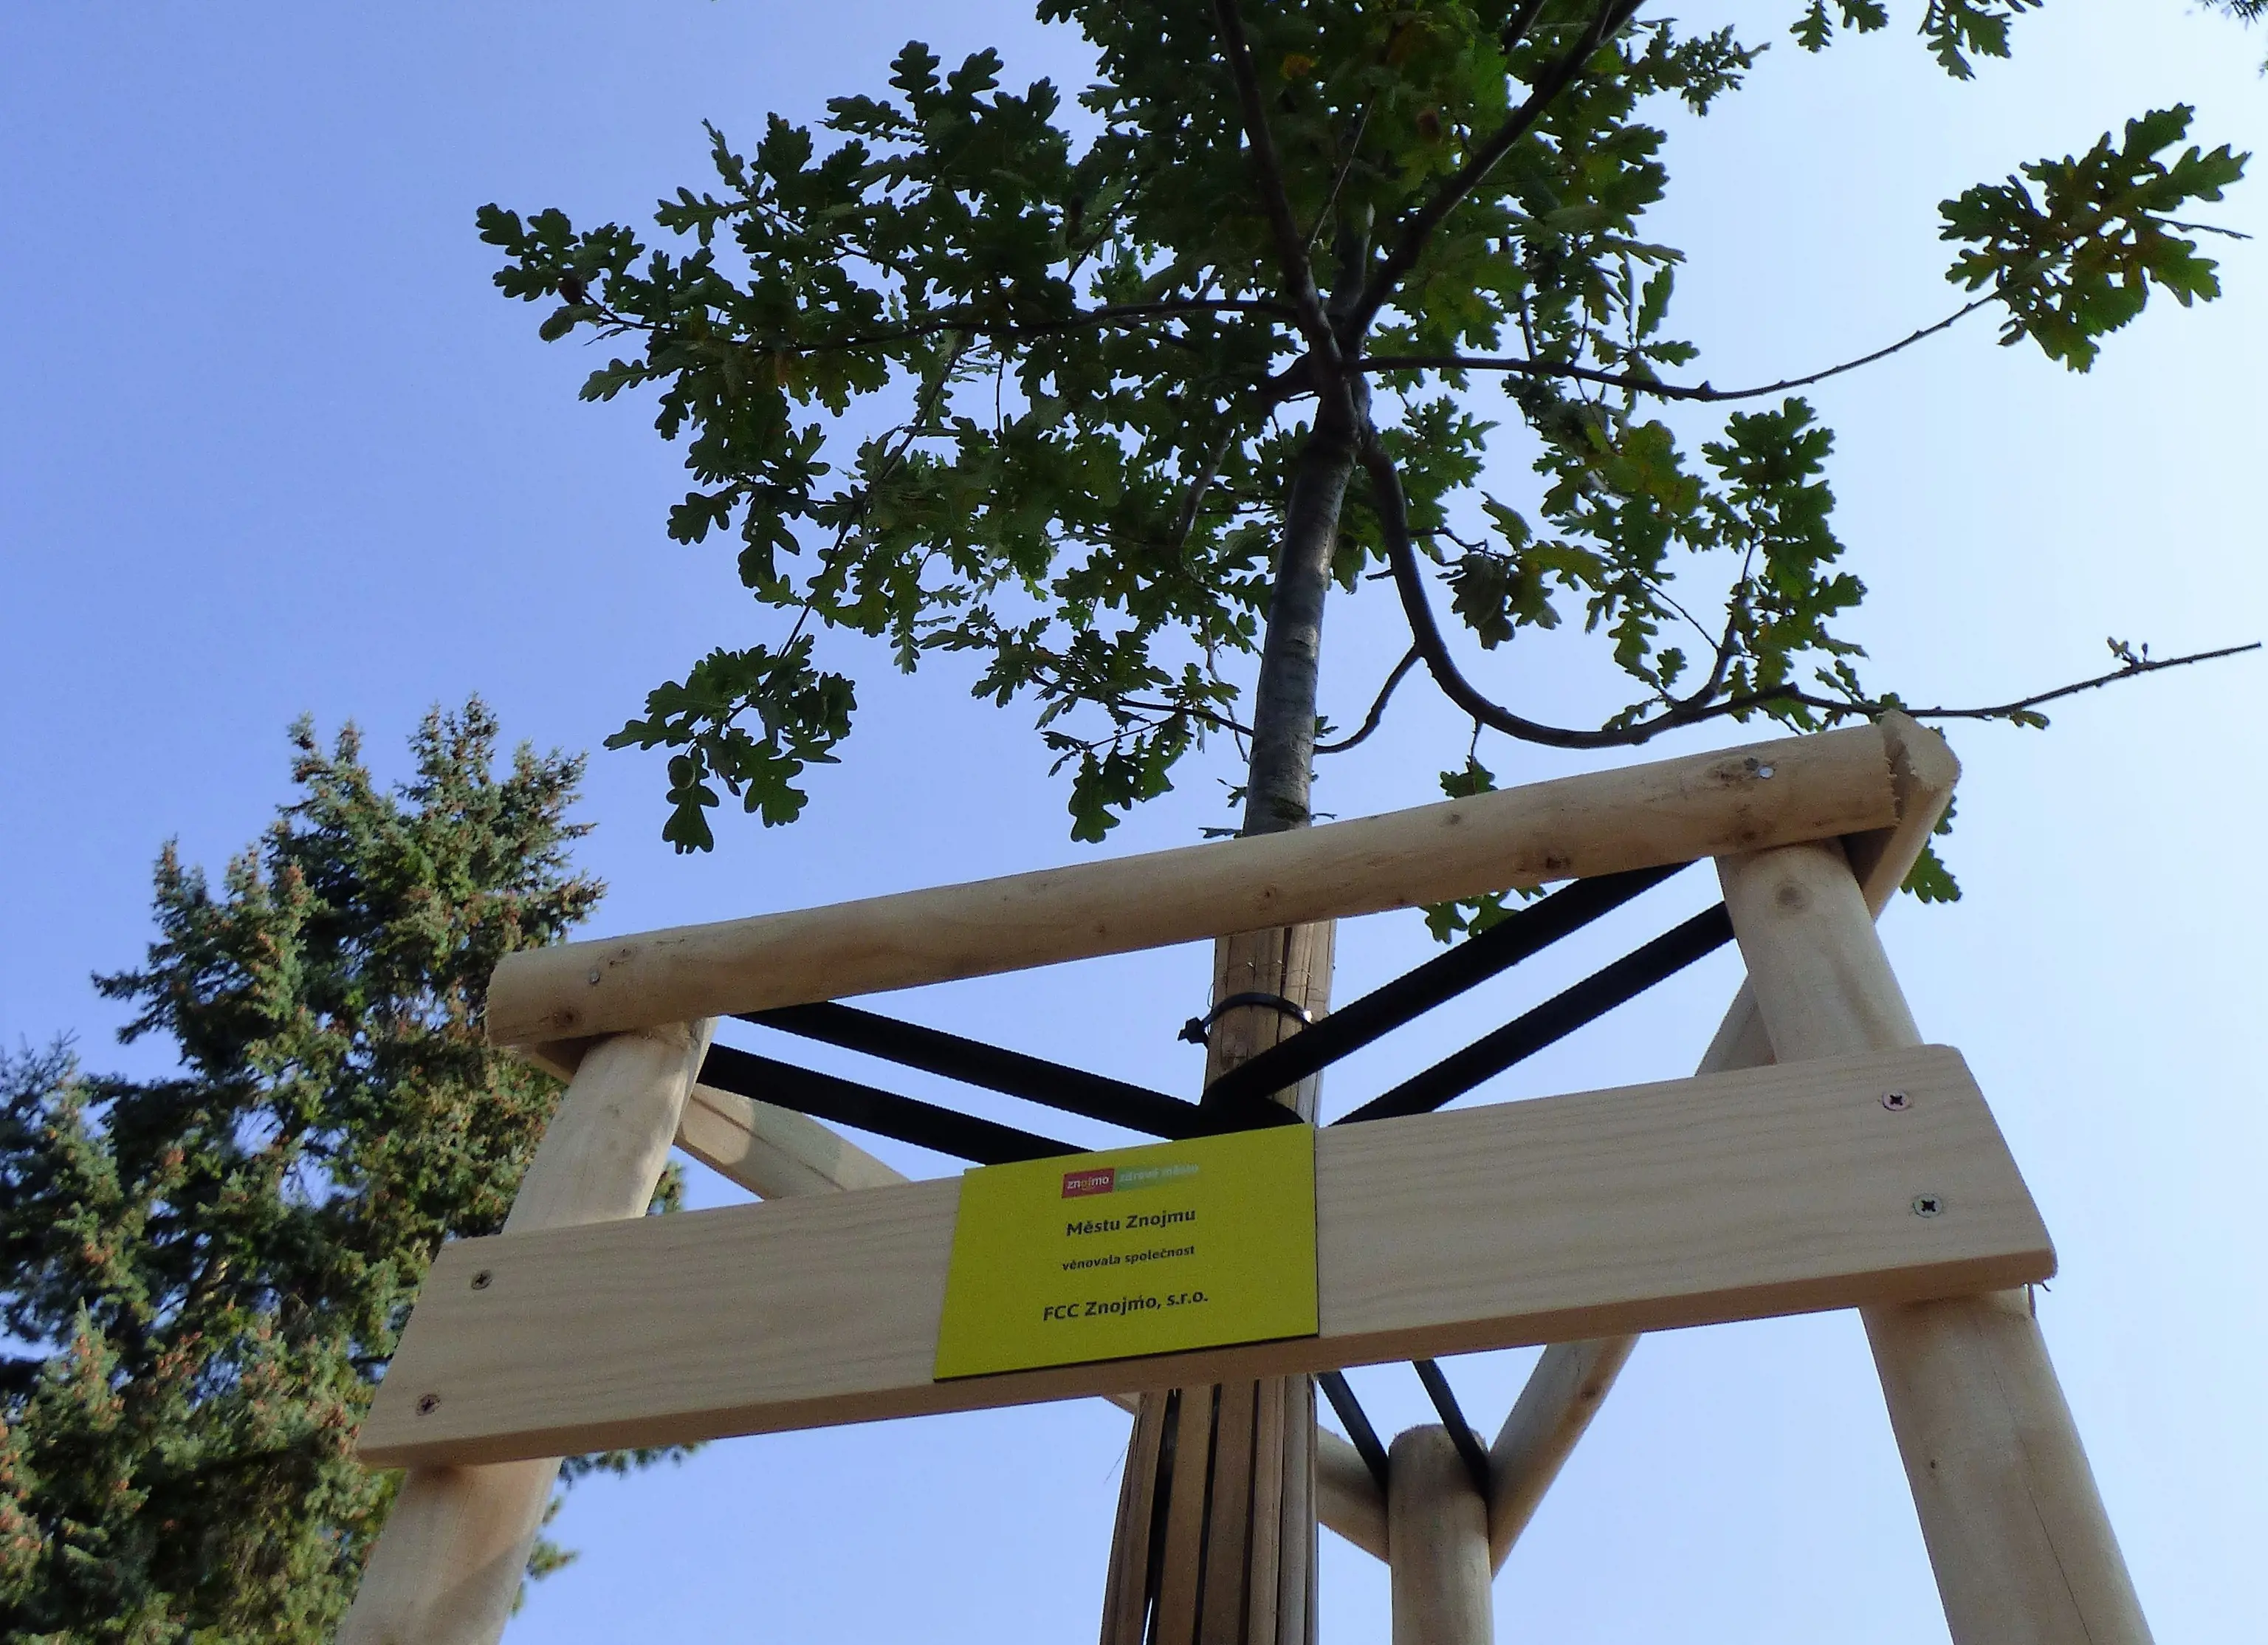 Společnost FCC Znojmo adoptovala strom 